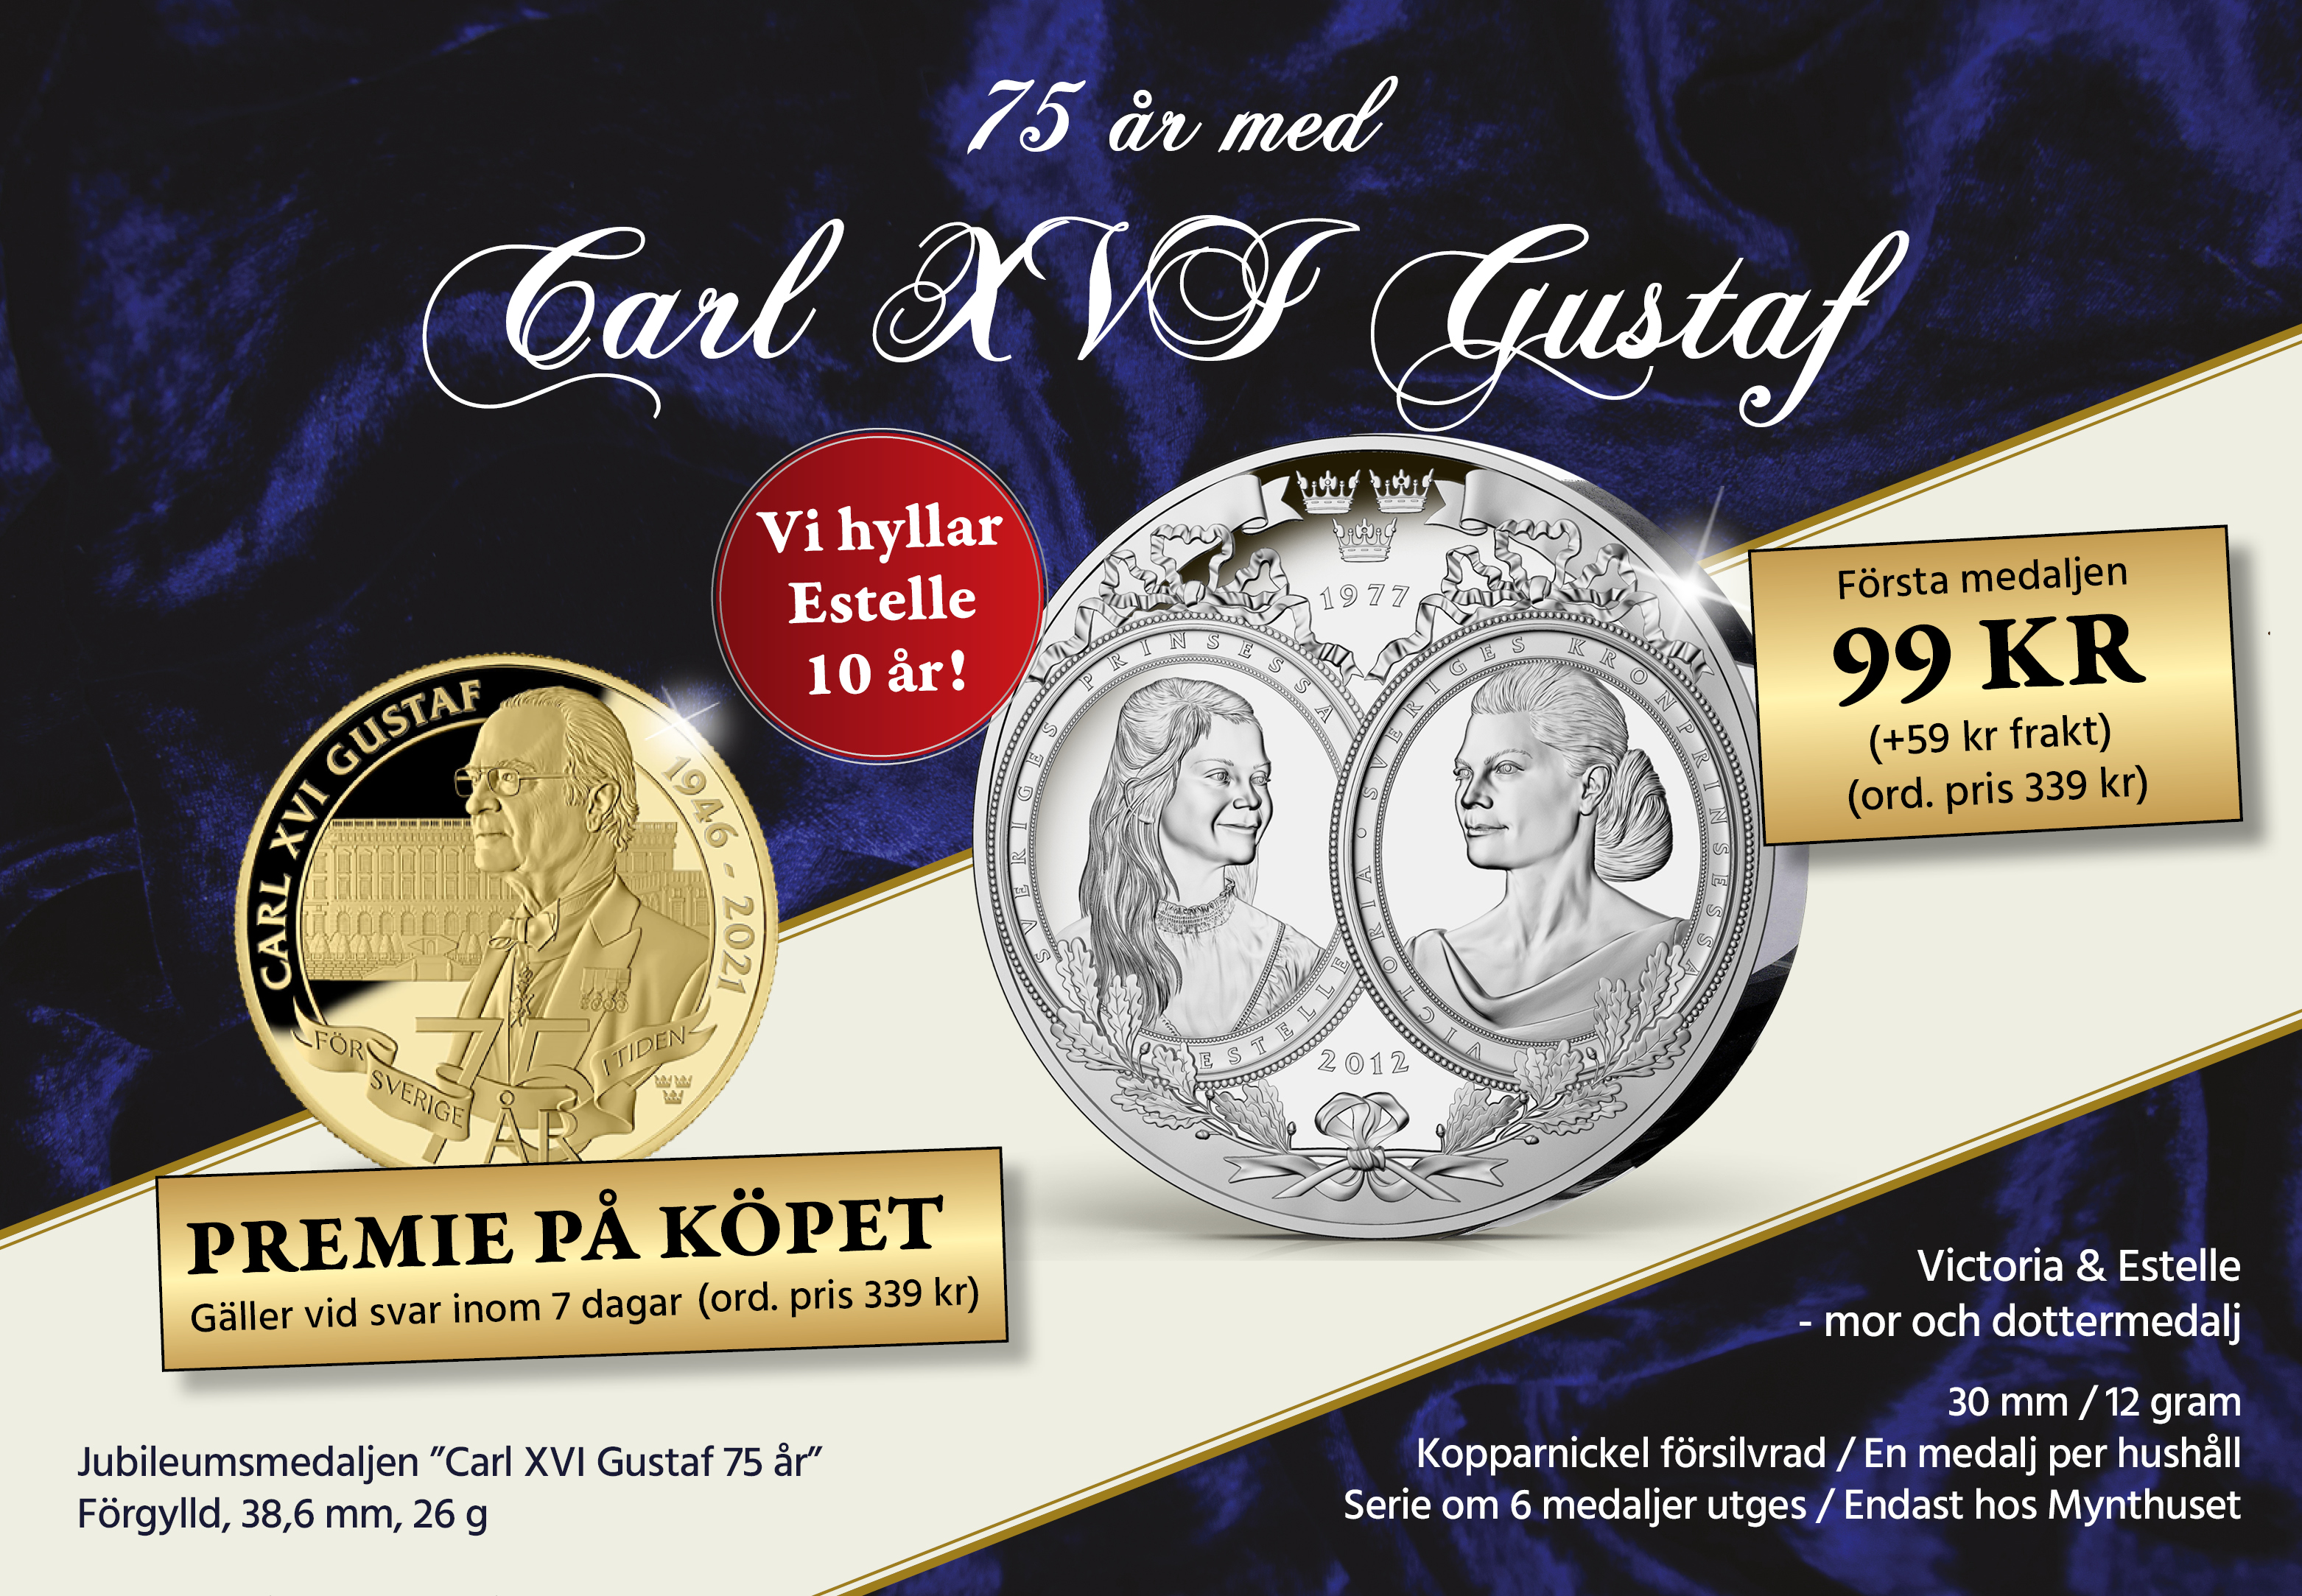 75 år med Carl XVI Gustaf 